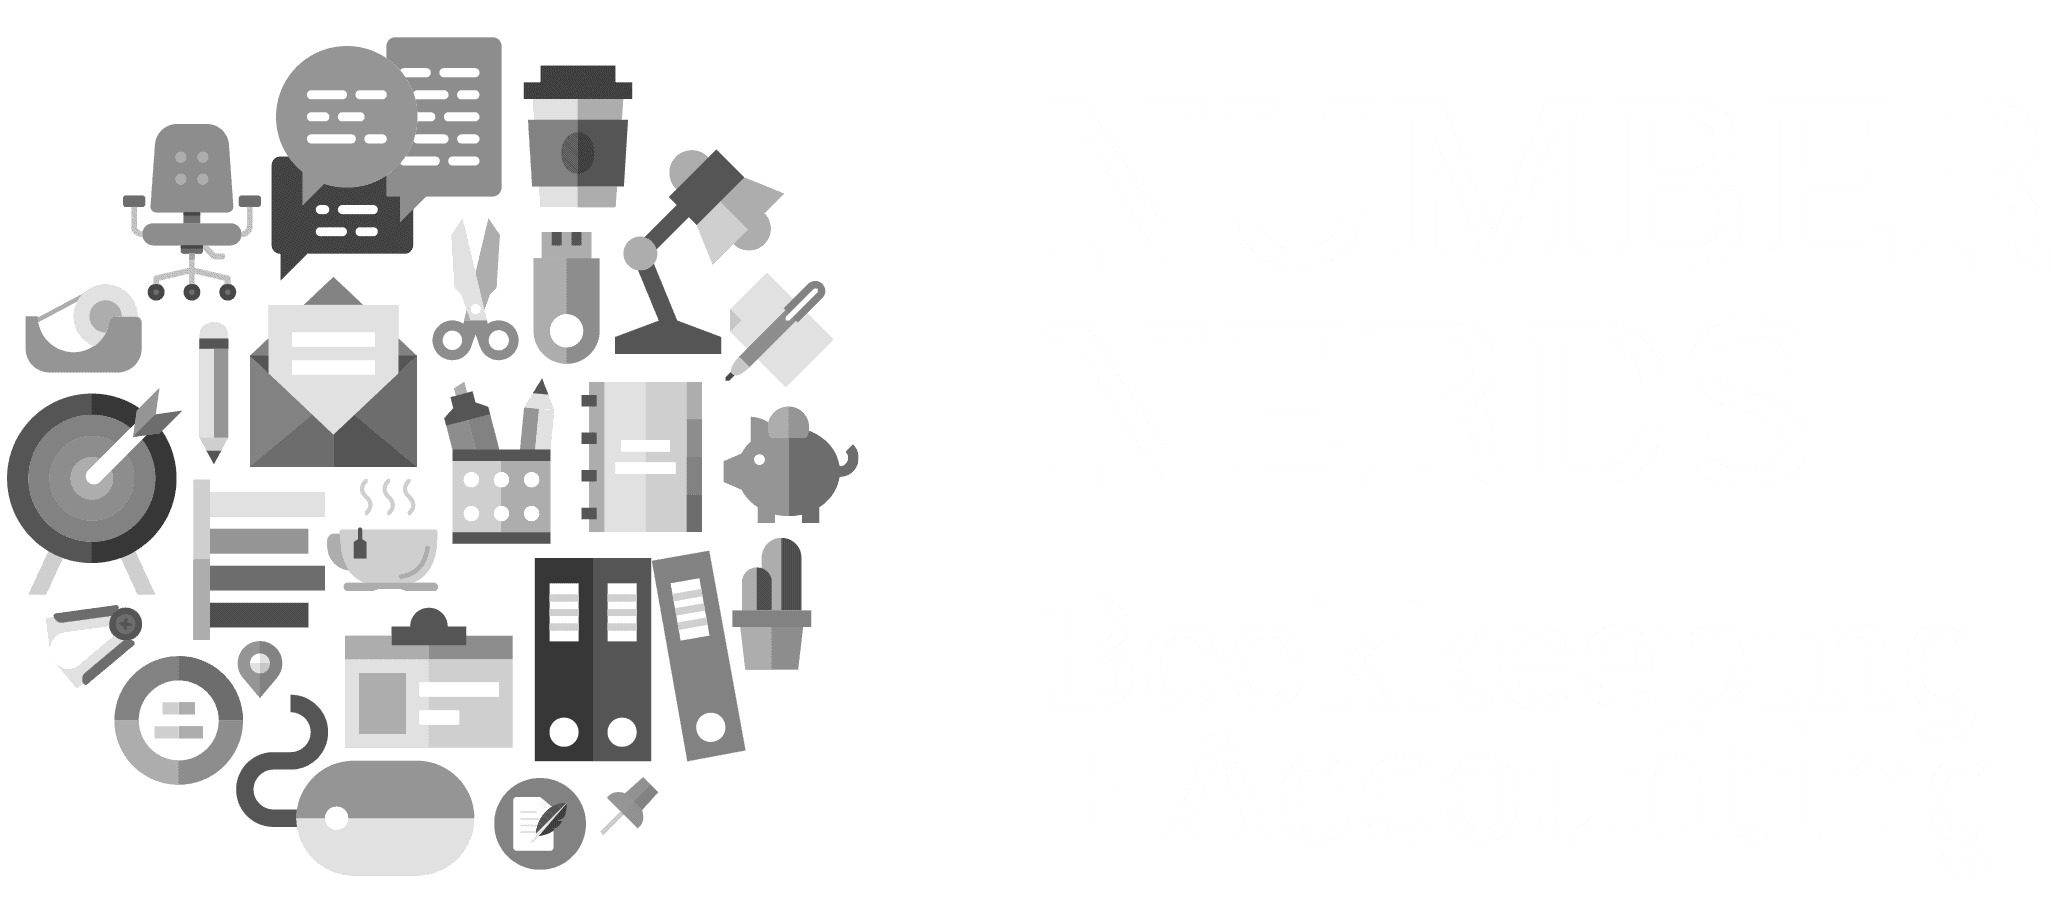 Number Nerds logos